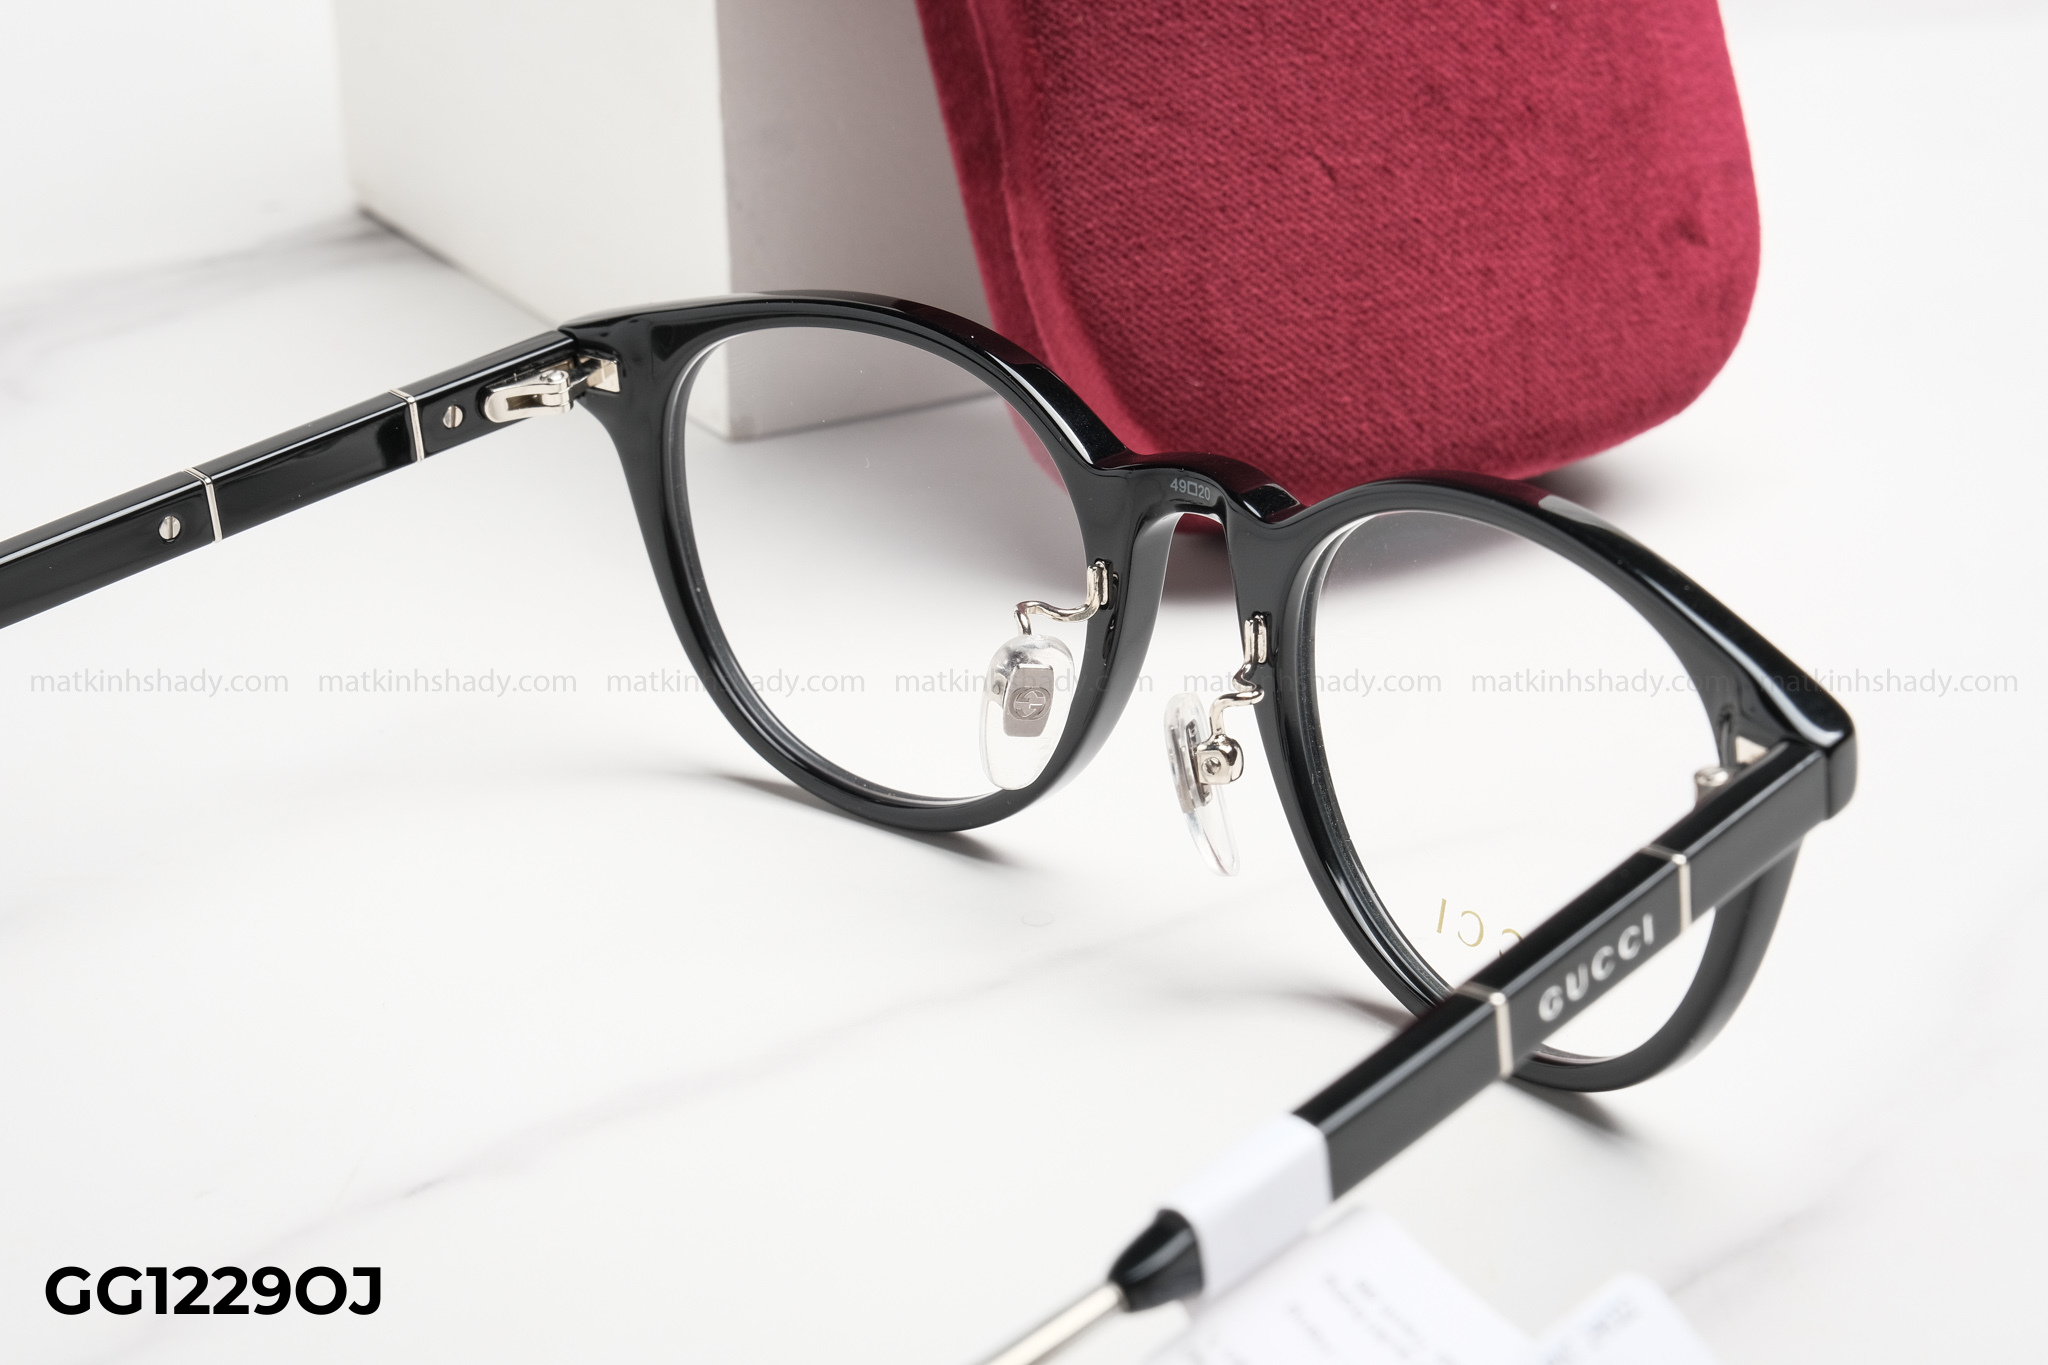  Gucci Eyewear - Glasses - GG1229OJ 